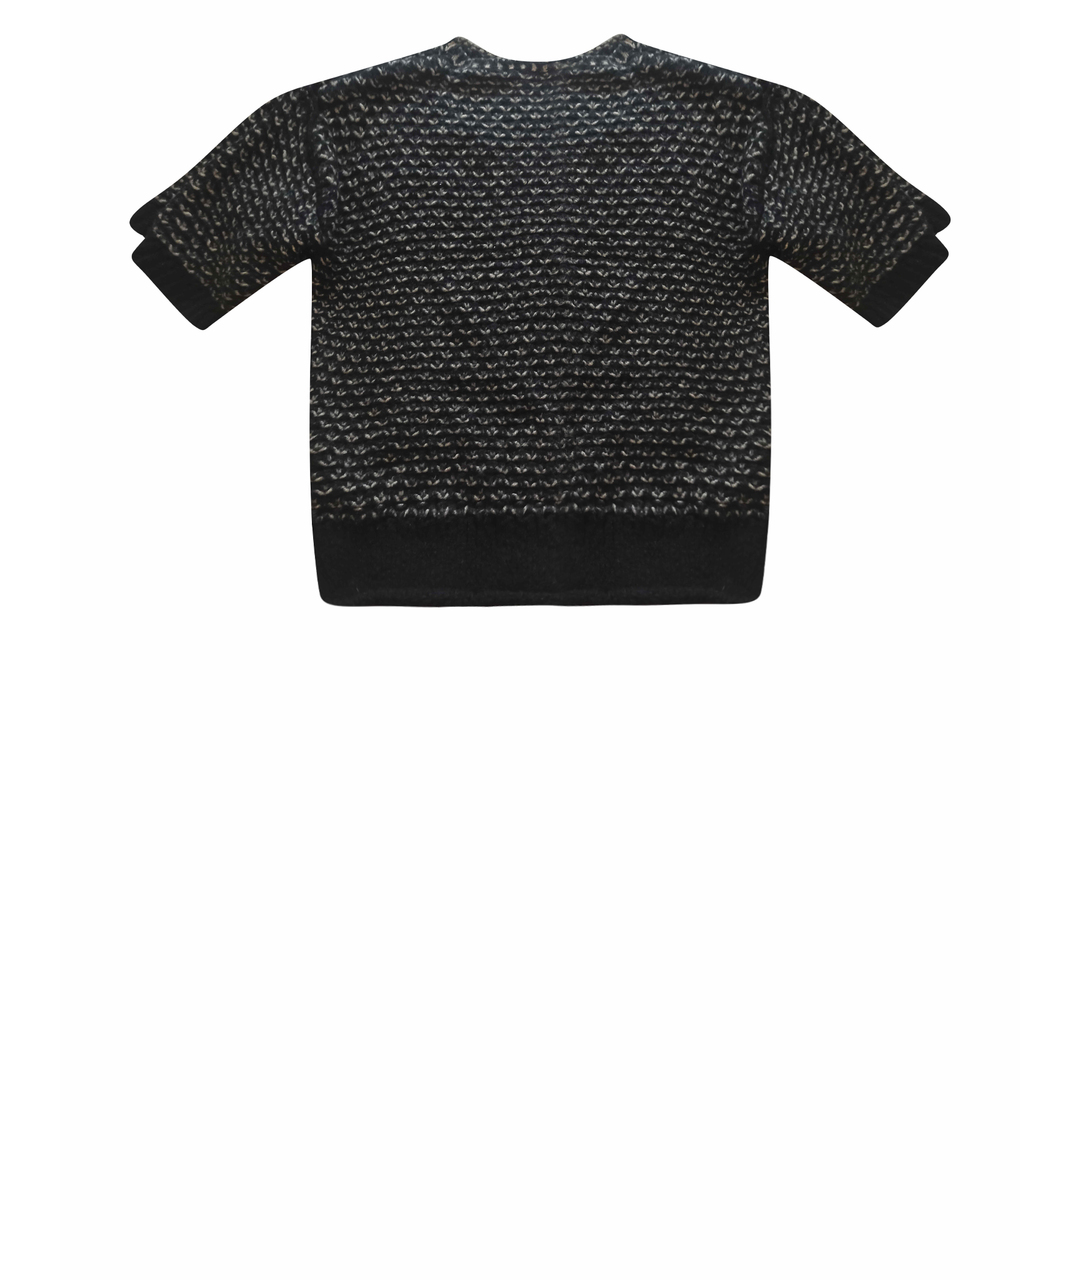 NINA RICCI Черный кашемировый джемпер / свитер, фото 1